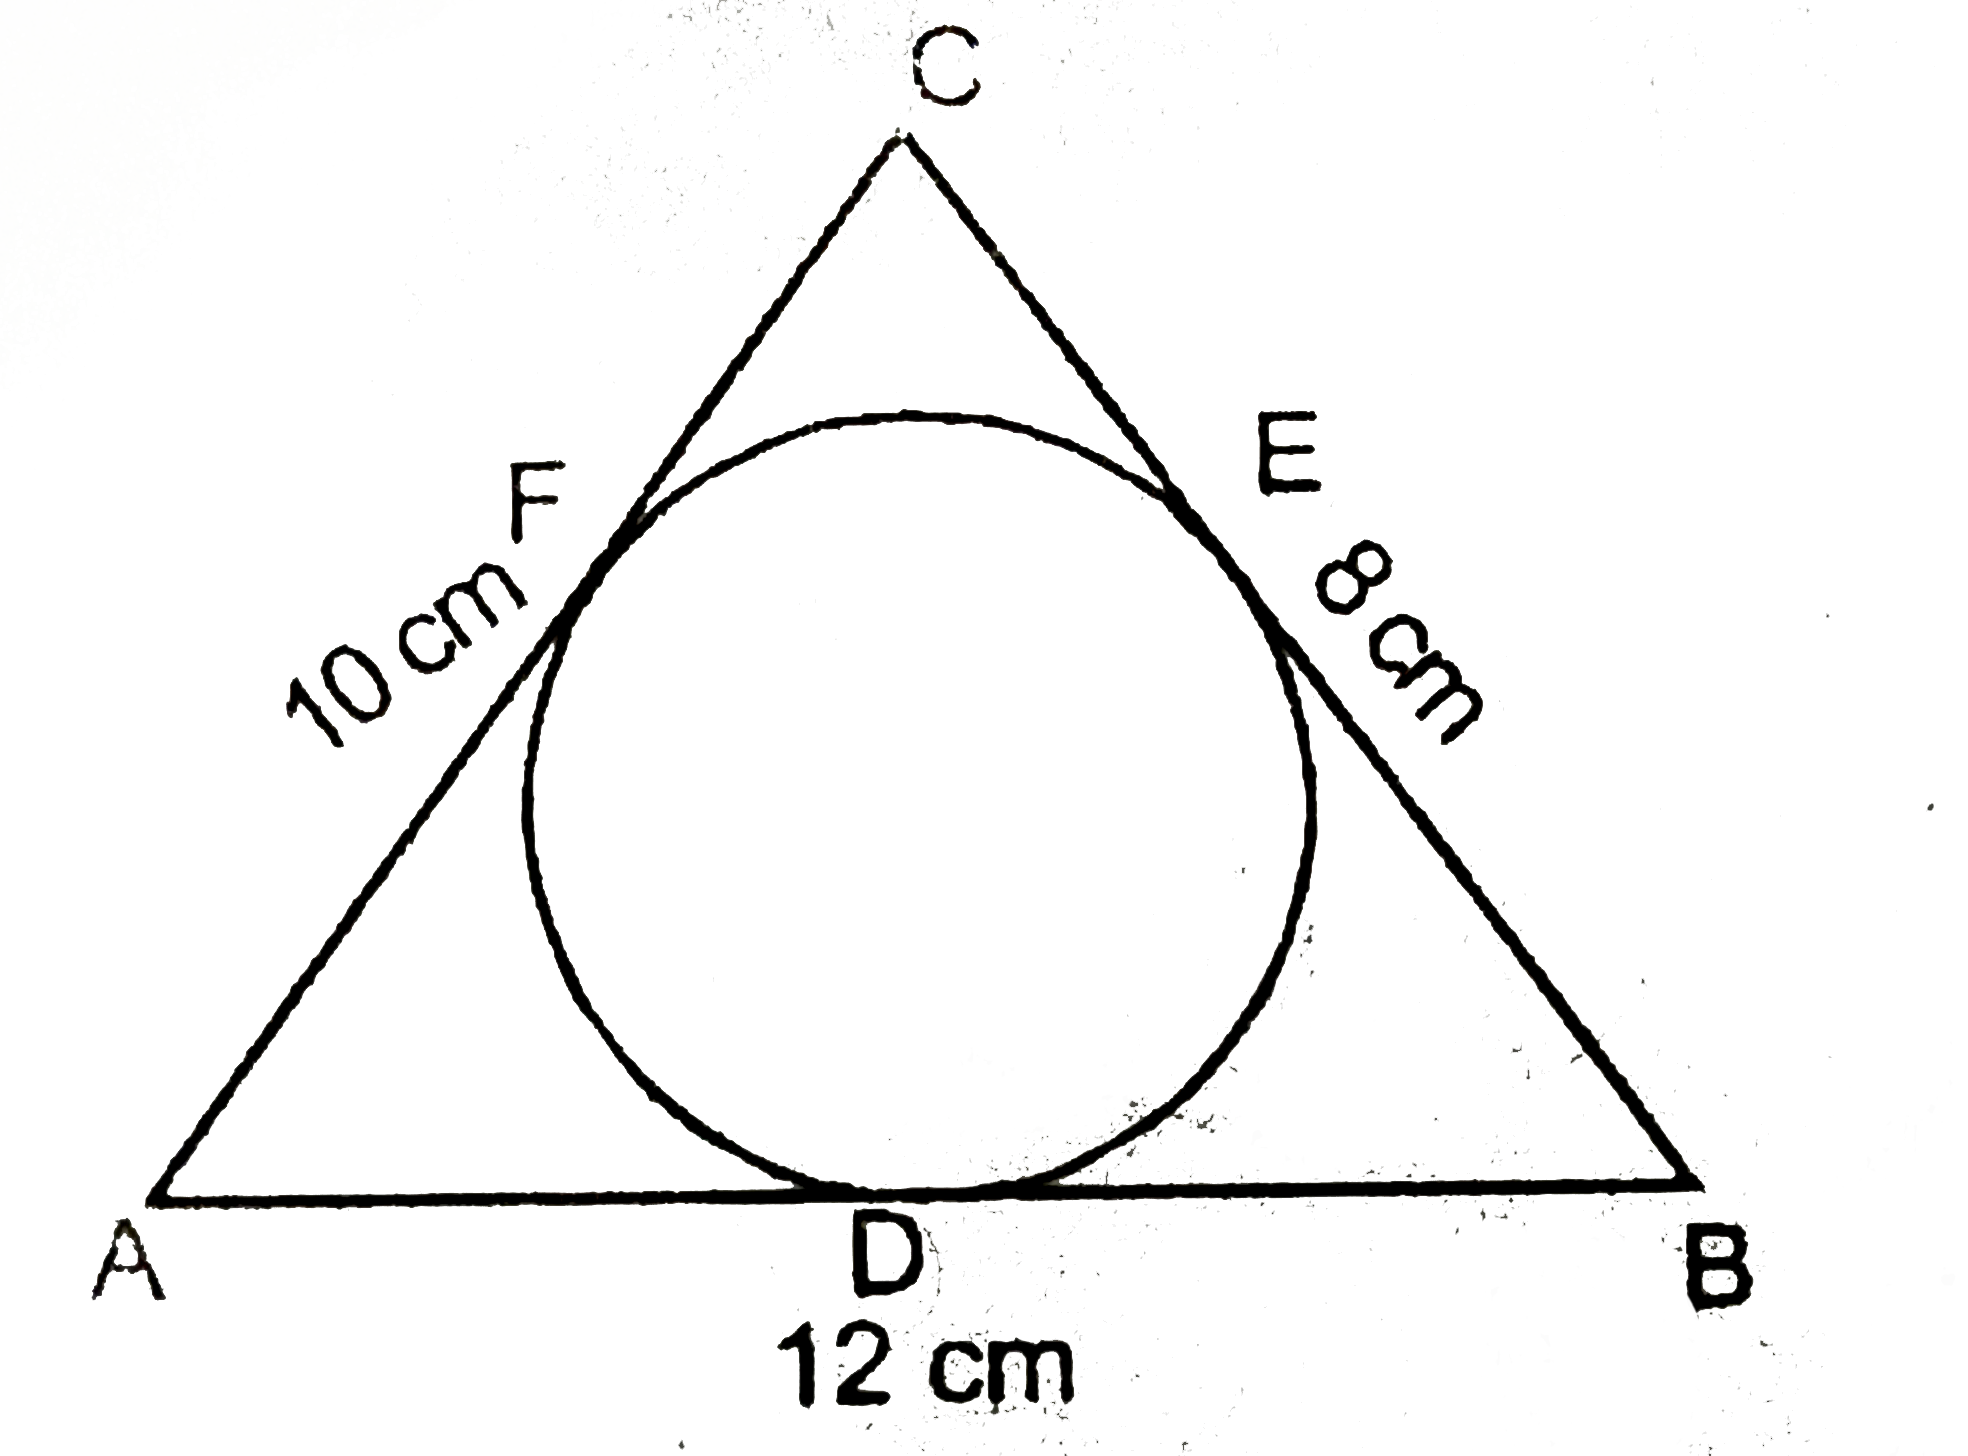 एक triangleABC जिसकी भुजाएँ 8cm, 10cm और 12 cm हैं, का अन्तः वृत्त खिंचा गया हैं, जैसा चित्र में दिखाया गया हैं।  तब AD, BE तथा CF का मान ज्ञात करें।